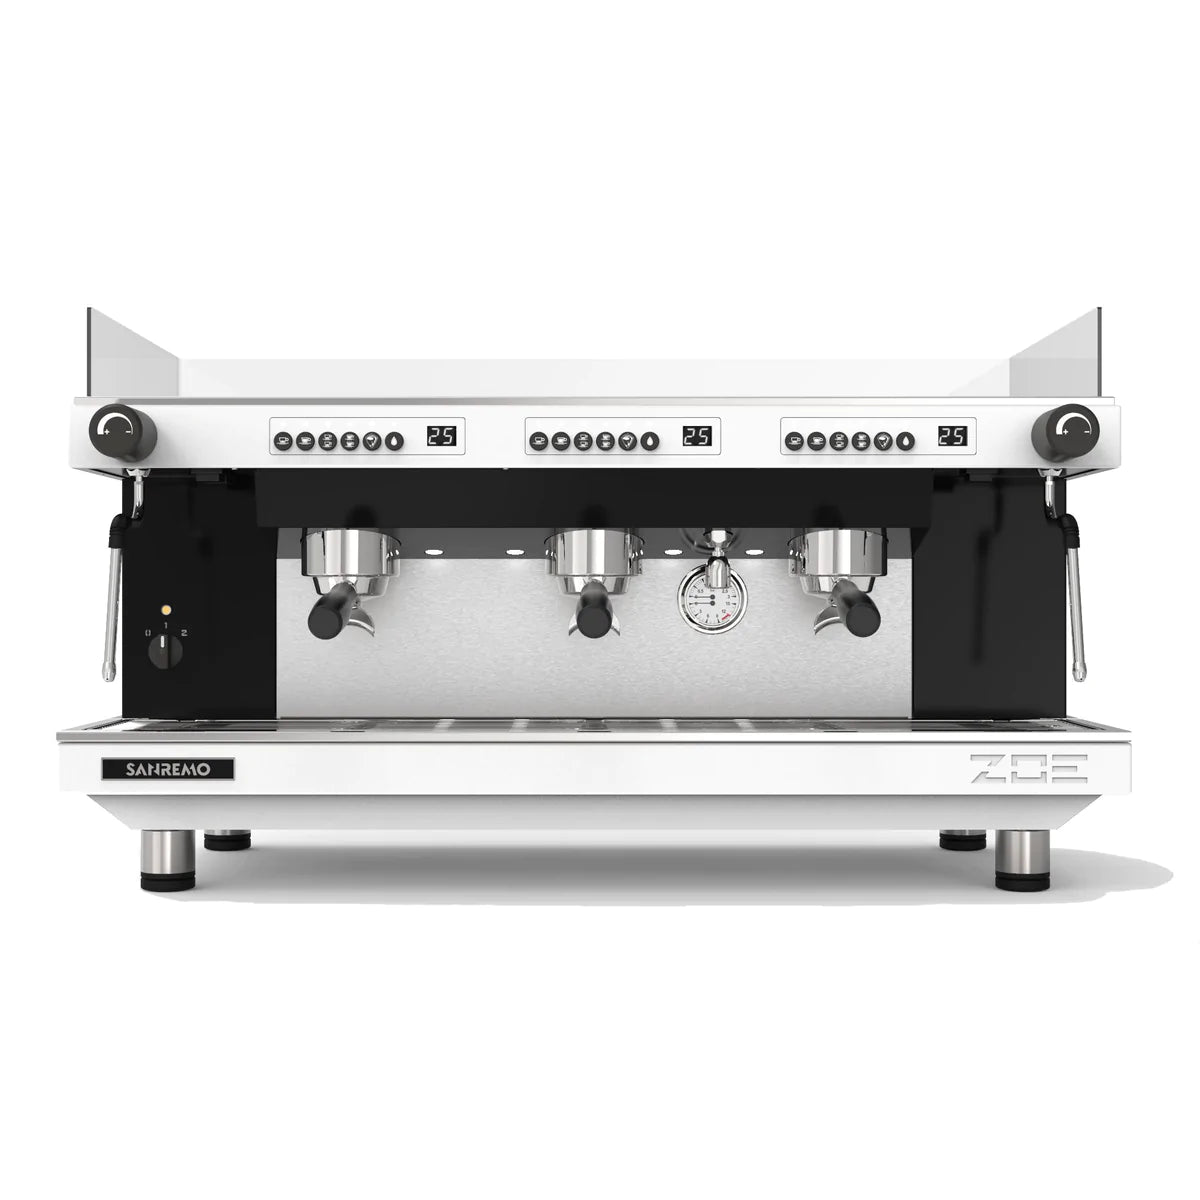 Sanremo You Espresso Machine - White